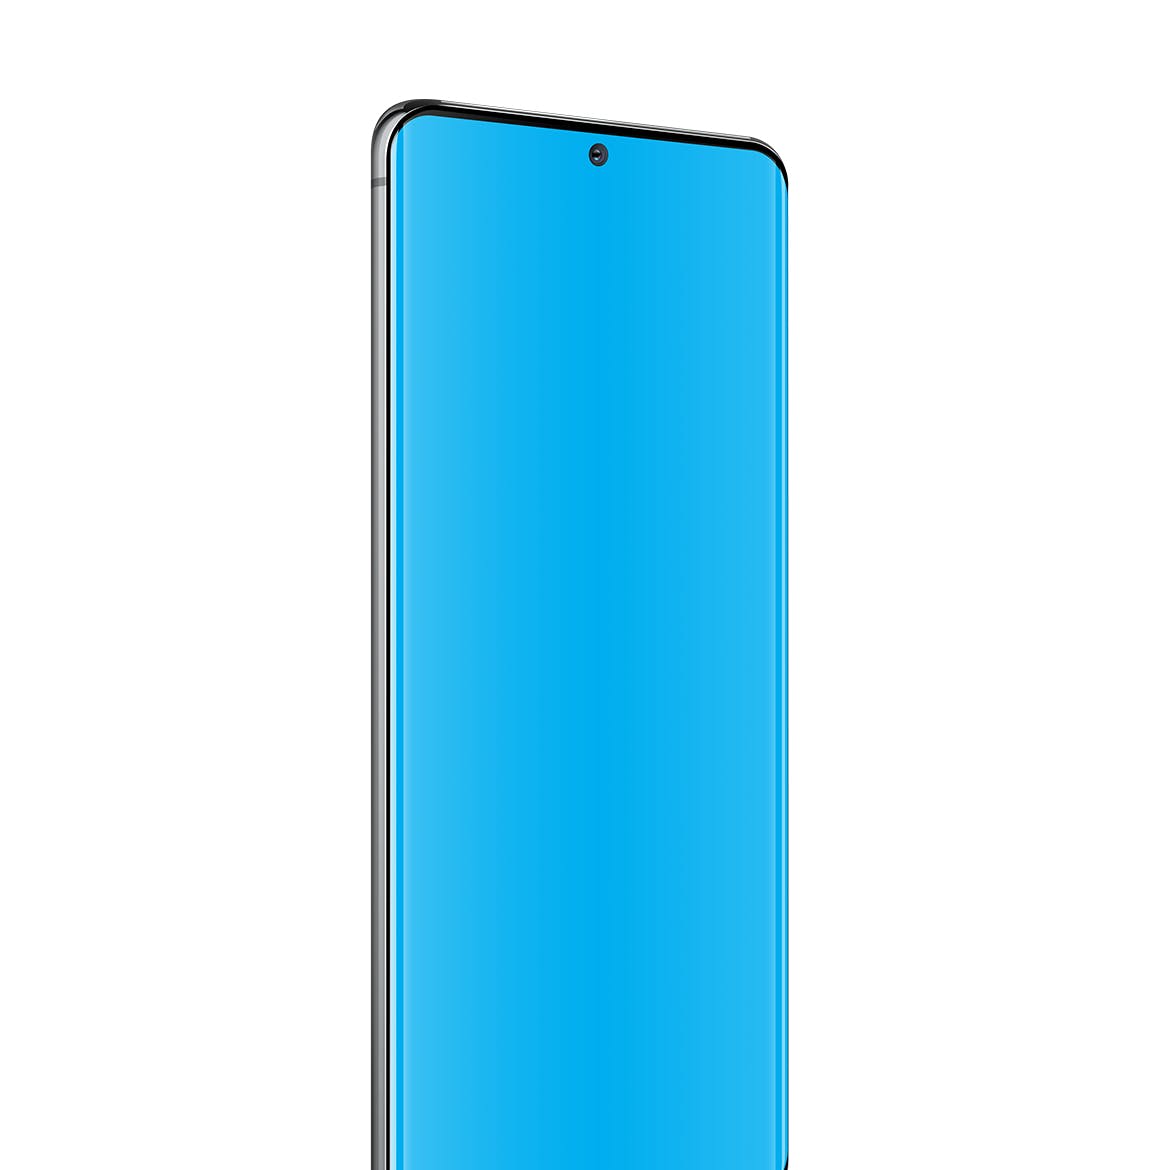 三星Galaxy S20 Ultra智能手机UI设计屏幕预览非凡图库精选样机 S20 Ultra Layered PSD Mockups插图(3)